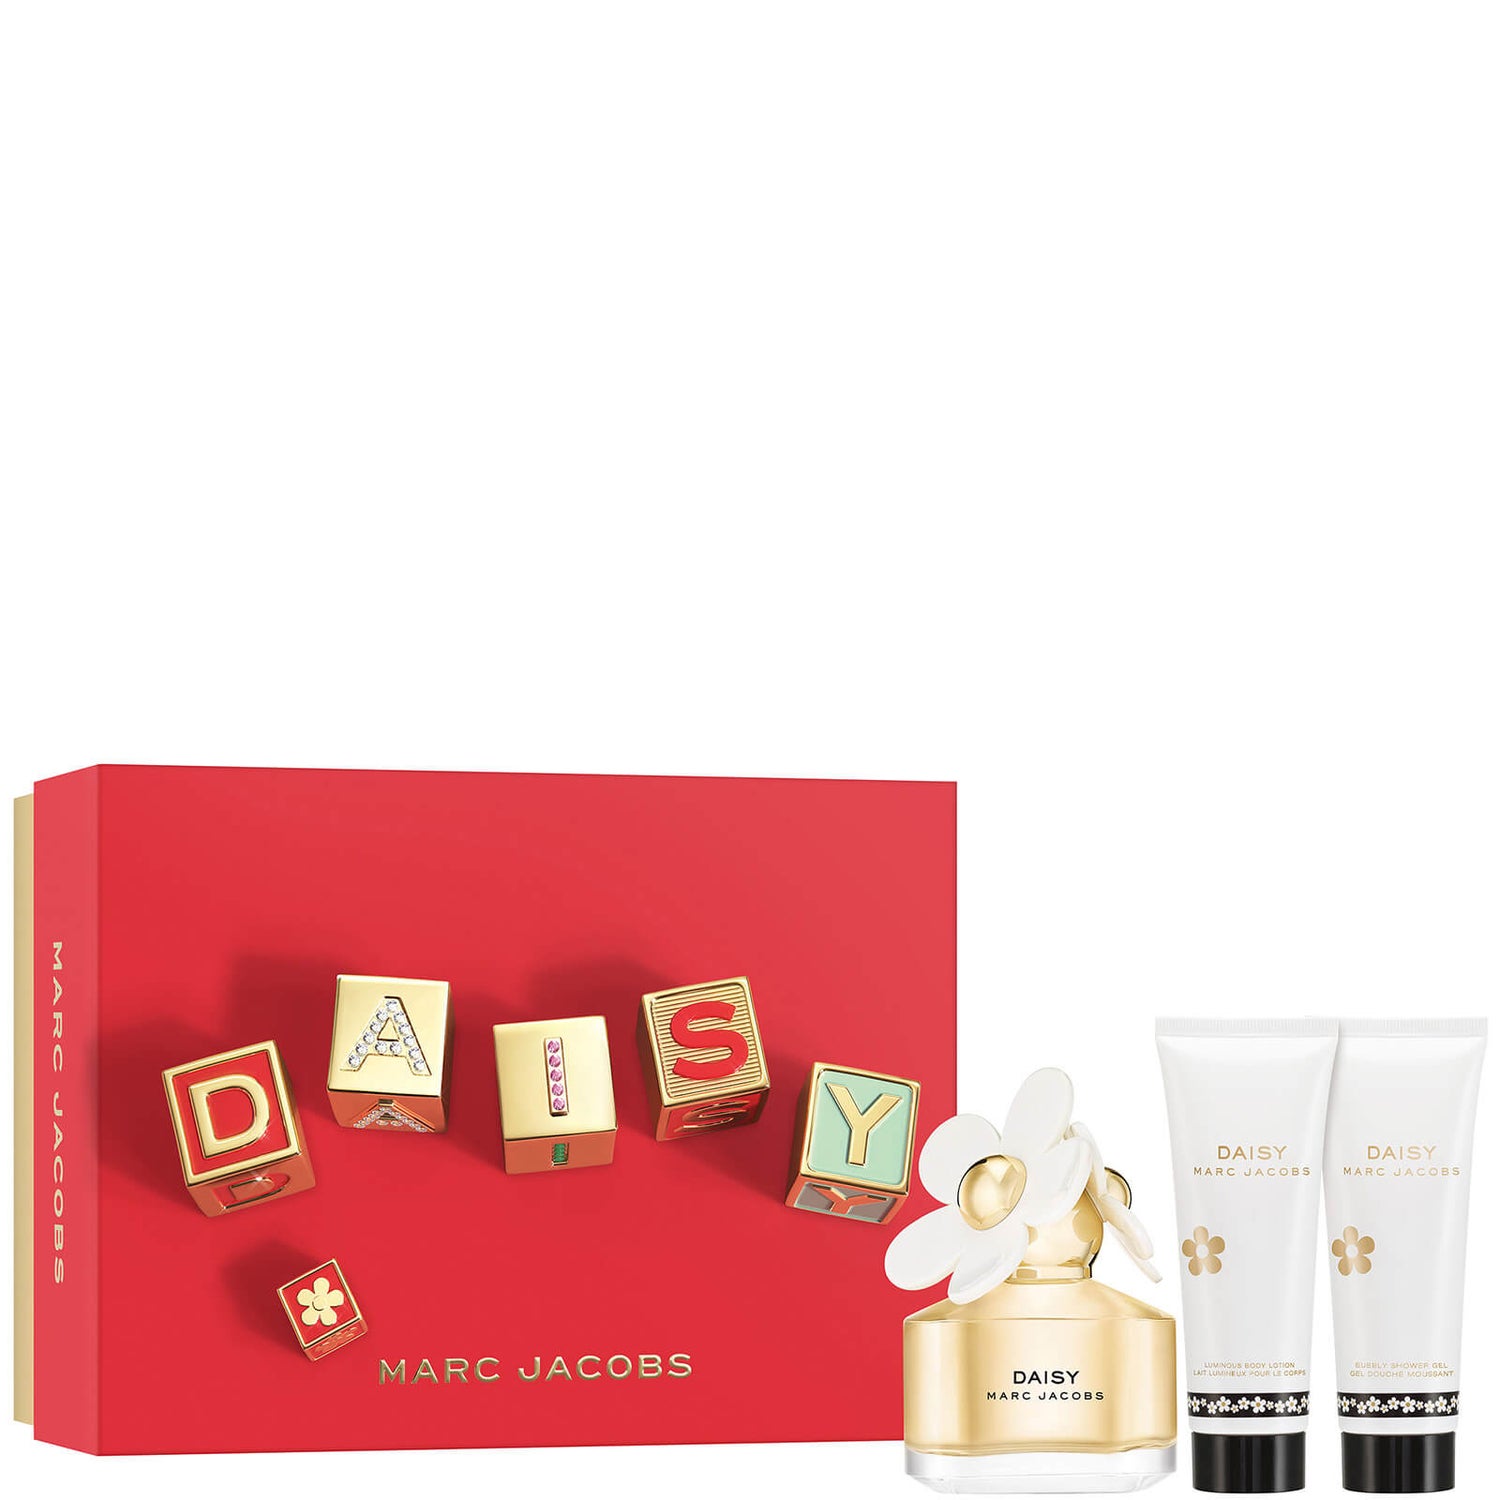 Marc Jacobs Daisy Eau de Toilette 50ml Подарочный набор лосьон для тела и гель для душа